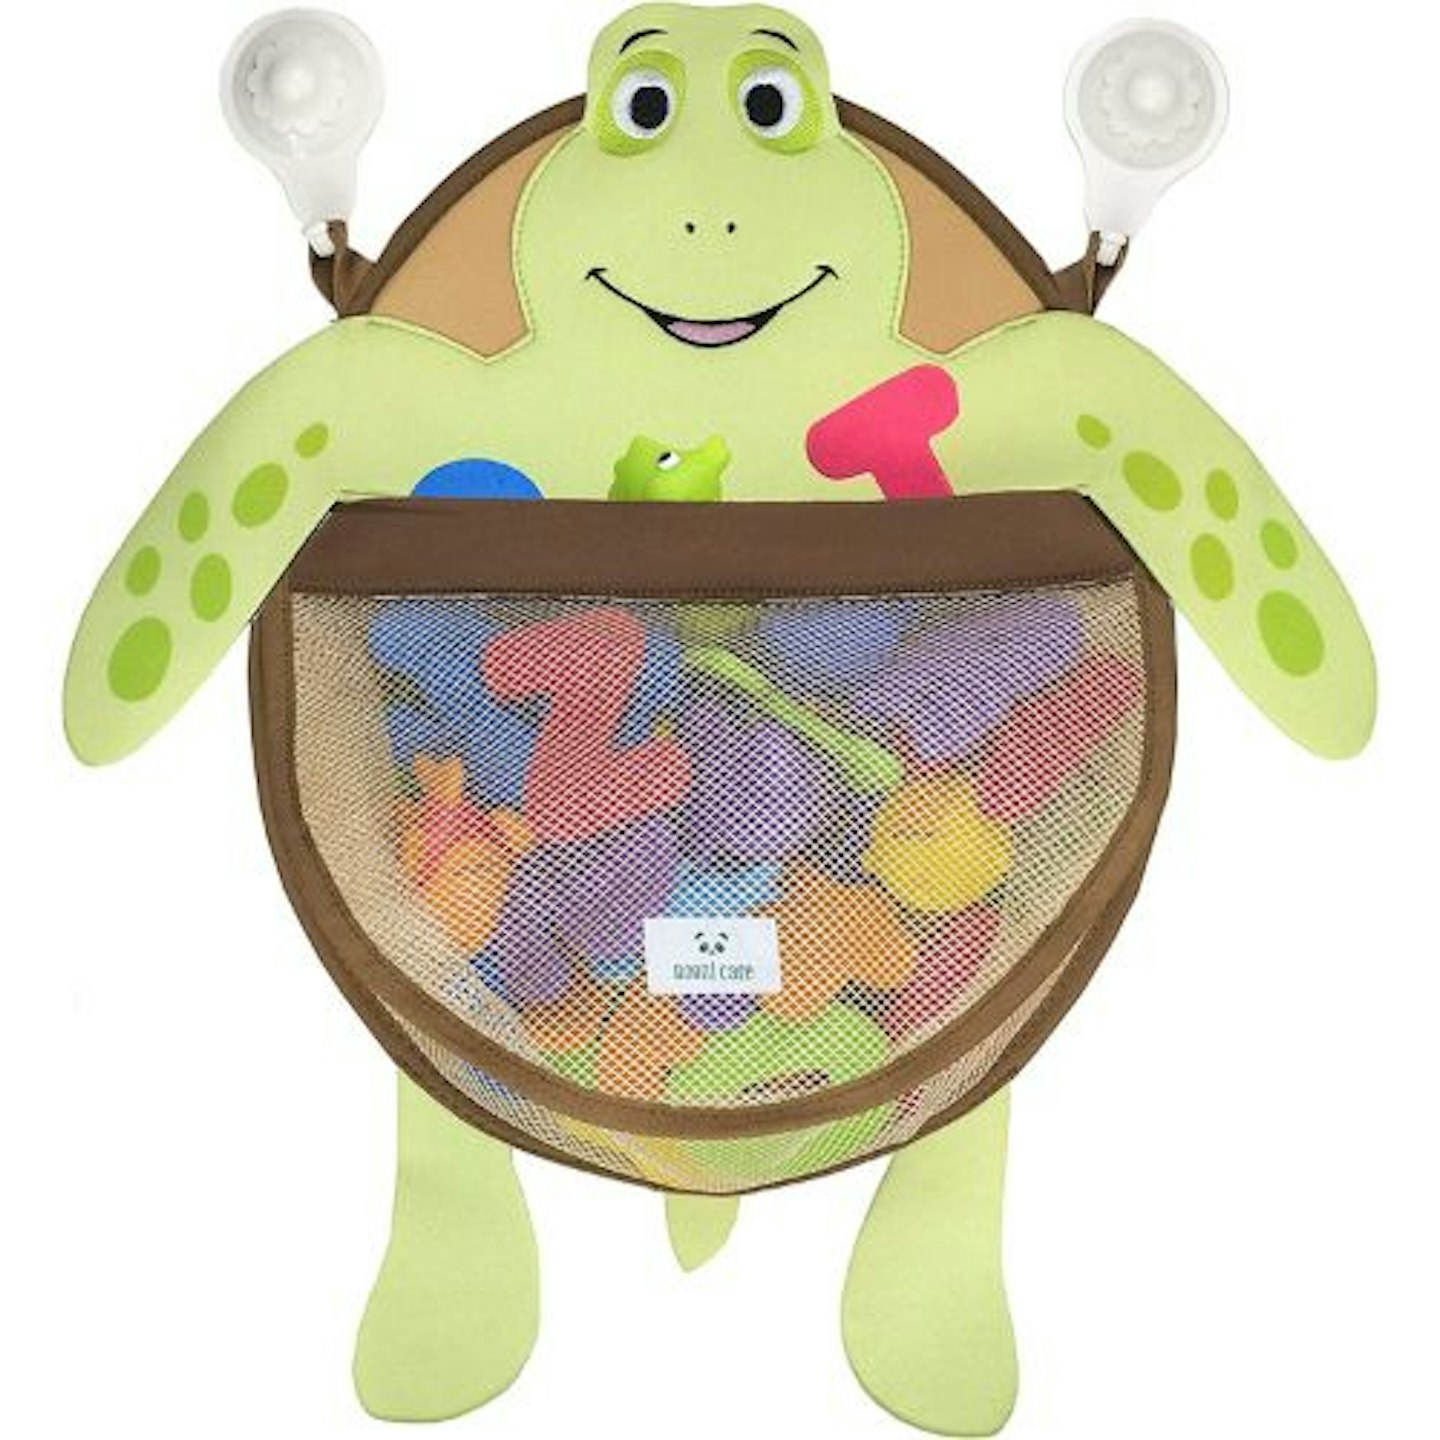 Bath Toy Organizer – AGAccessorygeeks